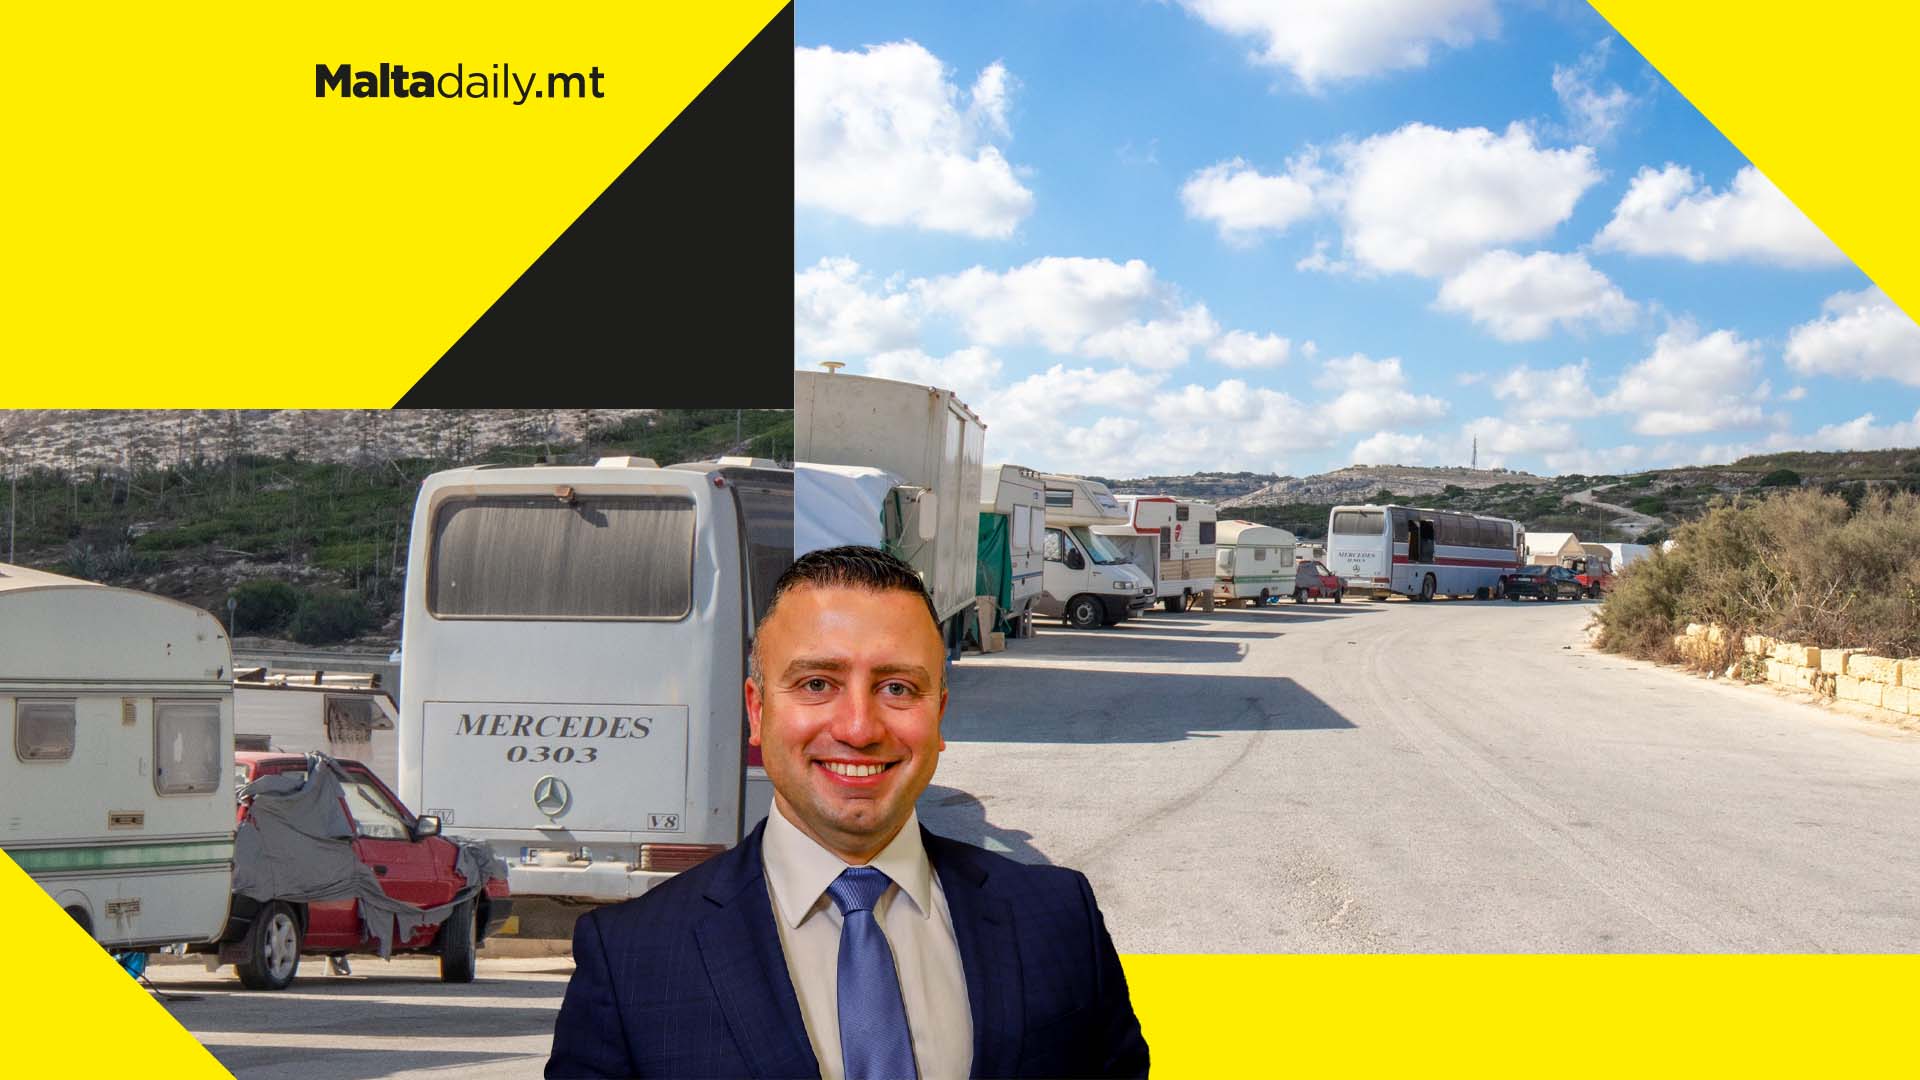 Application to keep Baħar iċ-Ċagħaq caravan zone retracted says Minister